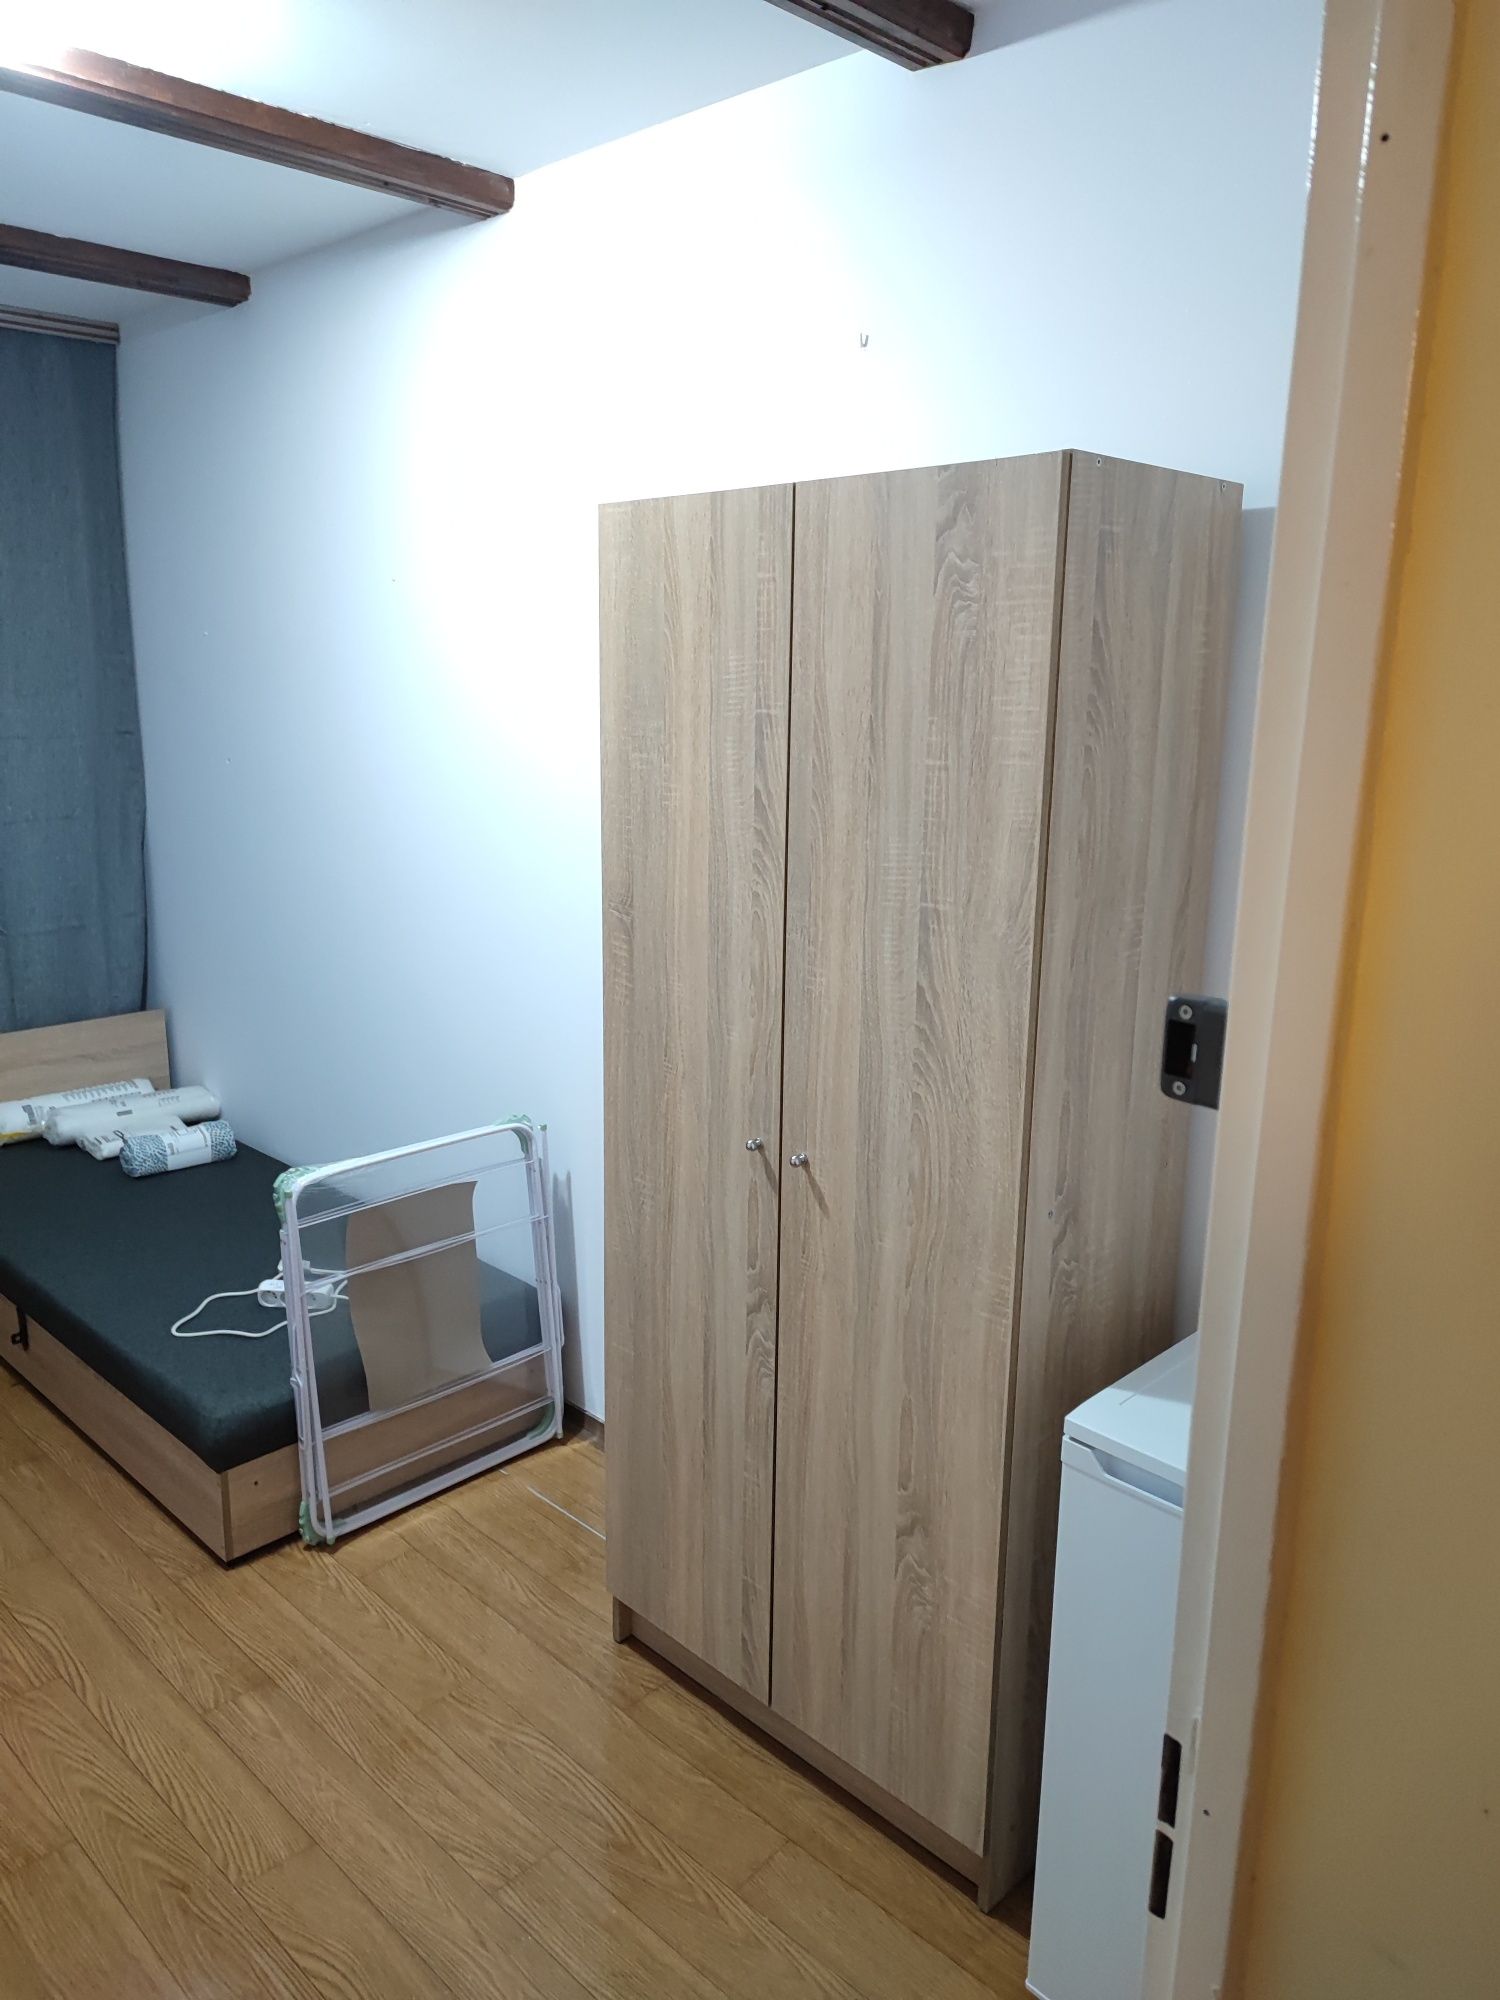 Pokój 2-osobowy Bolesławiec, duble room for rent in Bolesławiec